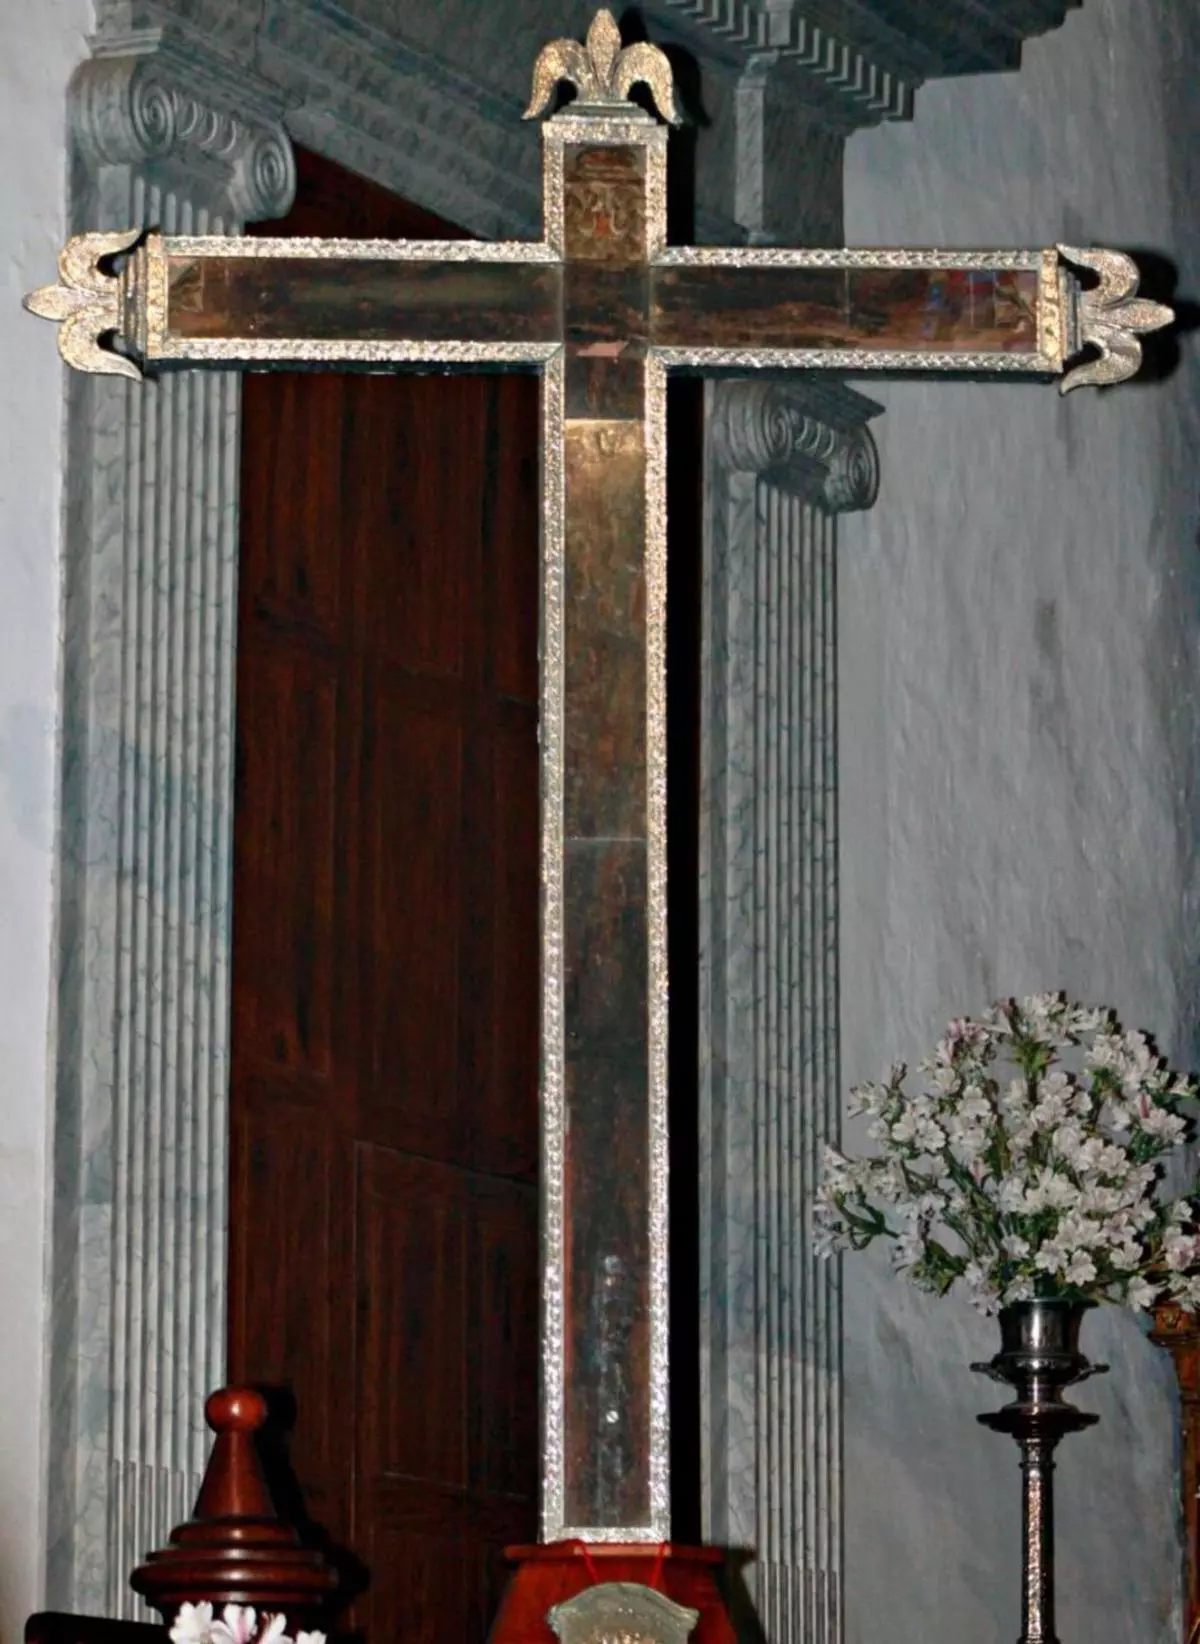 Una cruz de madera, 1.800 guanches y 1.200 castellanos: así empezó Santa Cruz